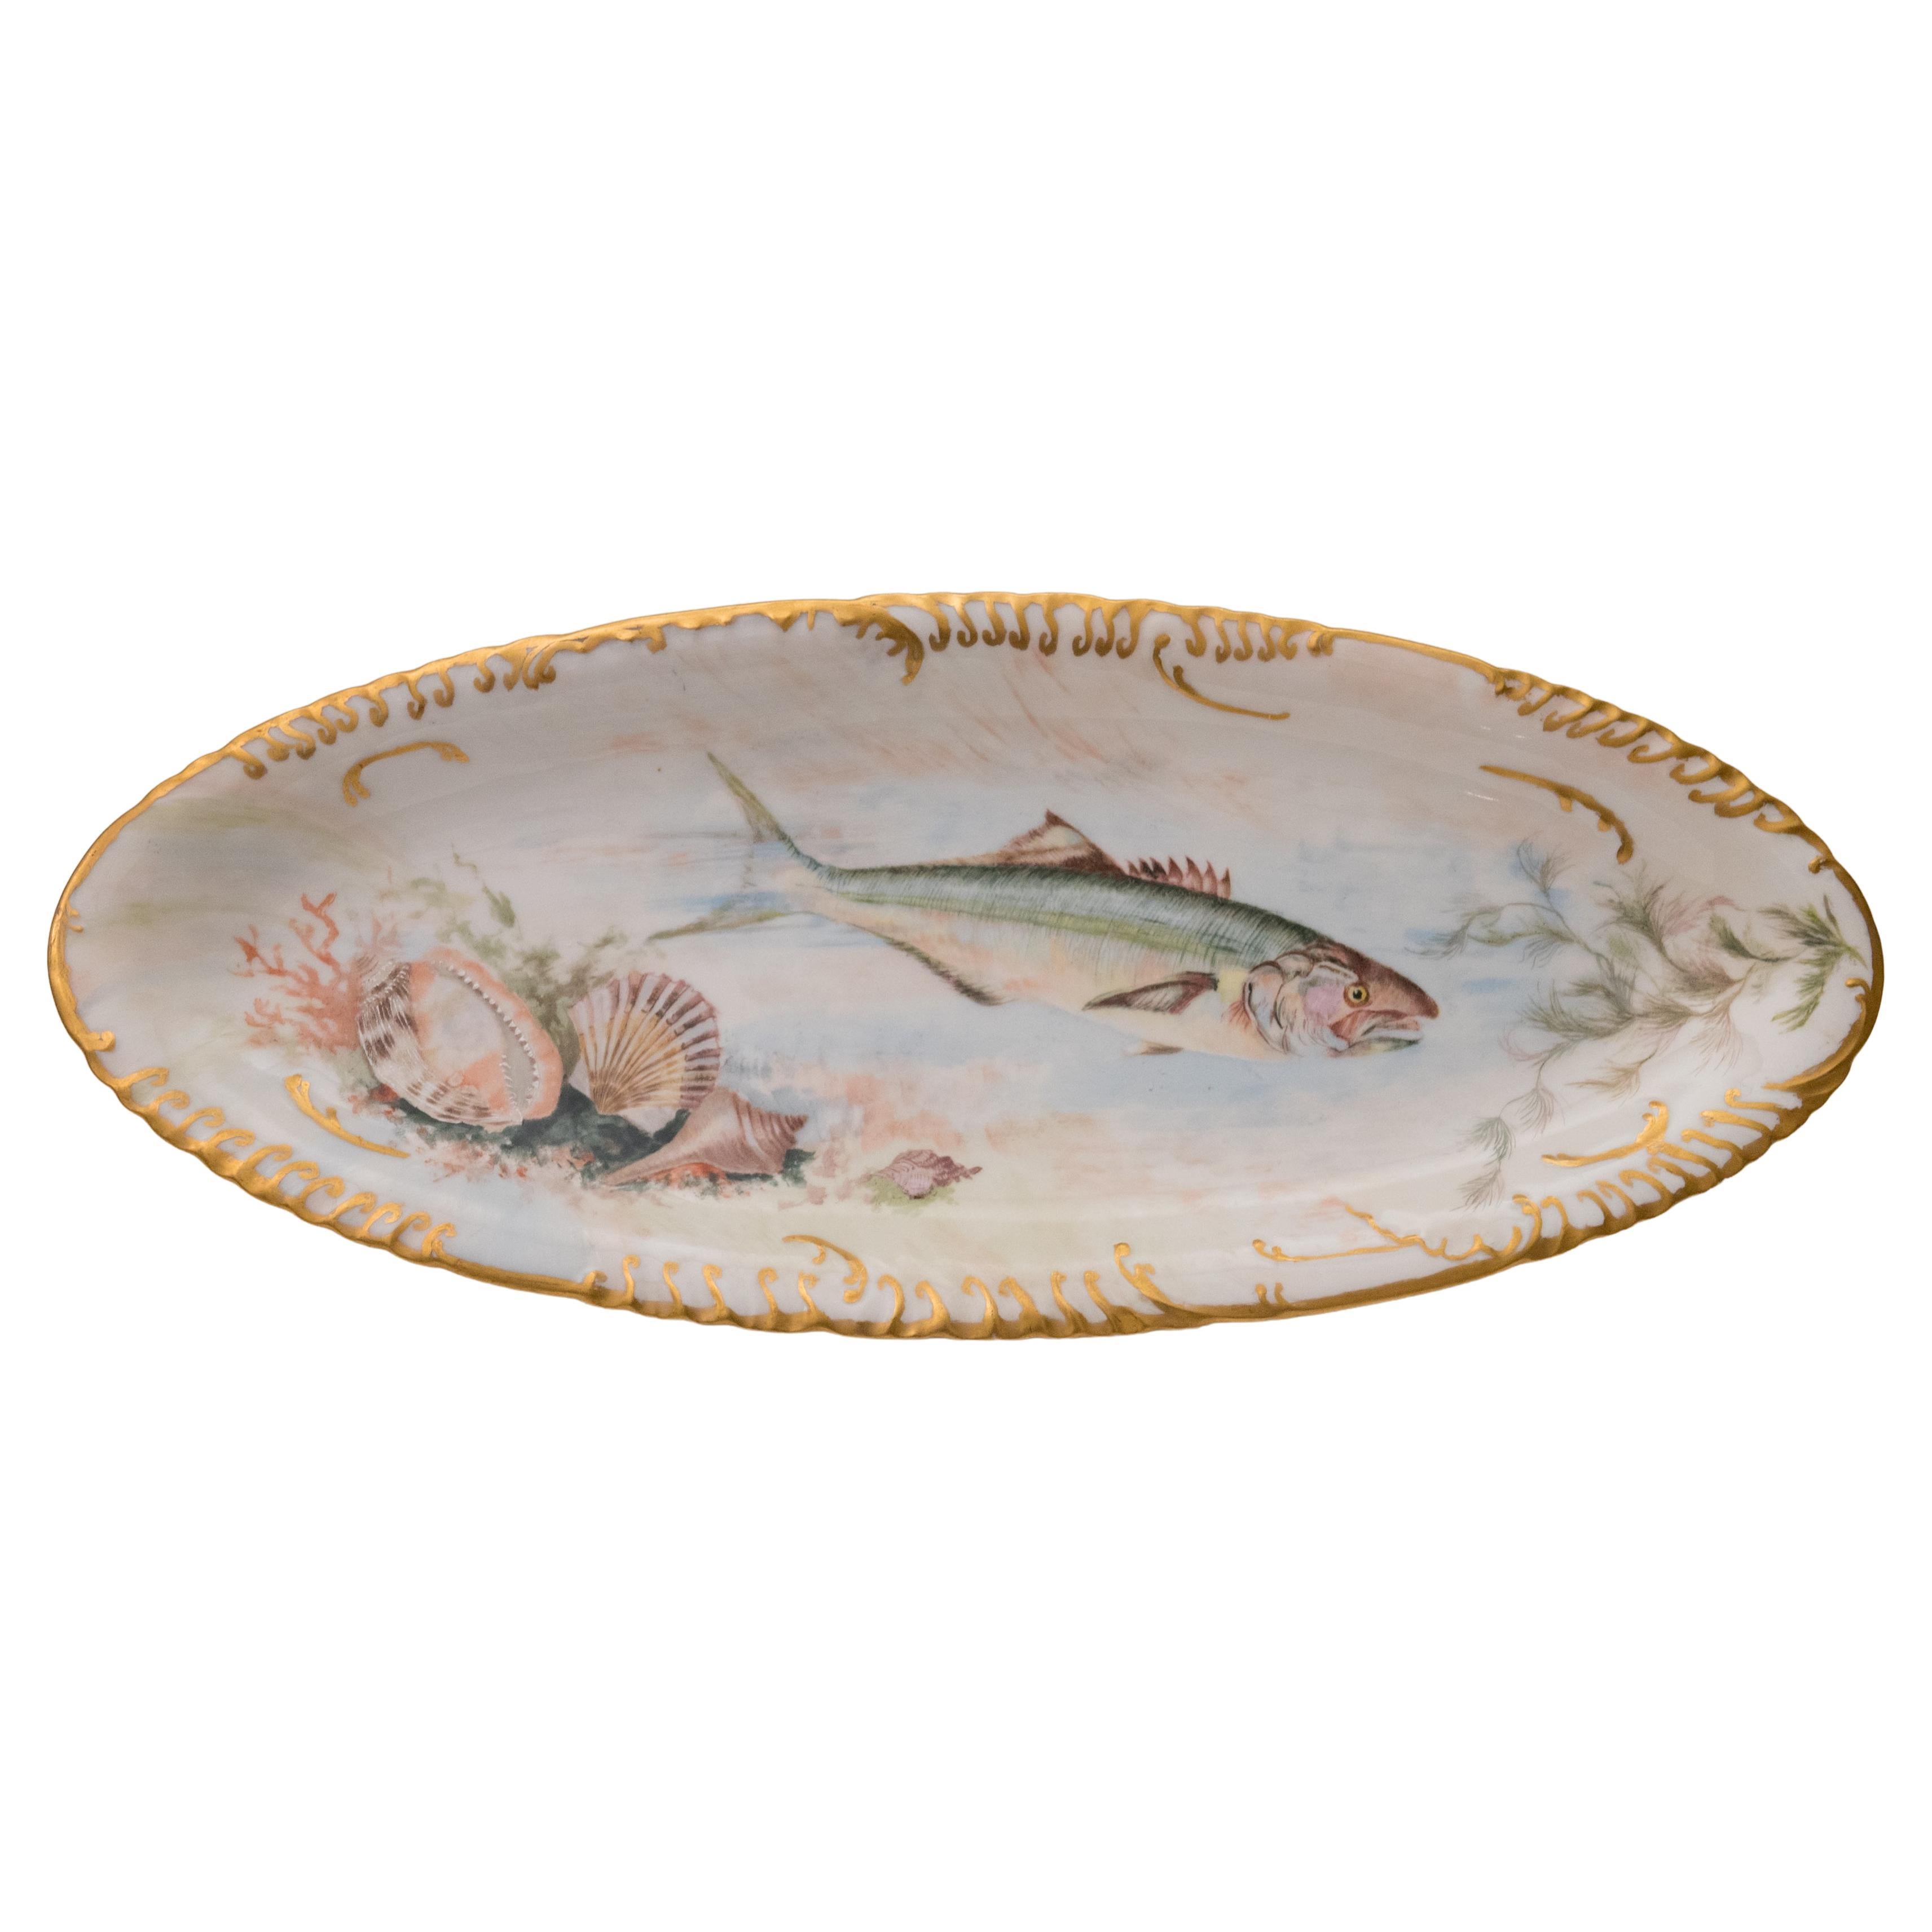 Haviland Belle Epoque French Limoges Porcelain France 15.75" Large Oval Platter 